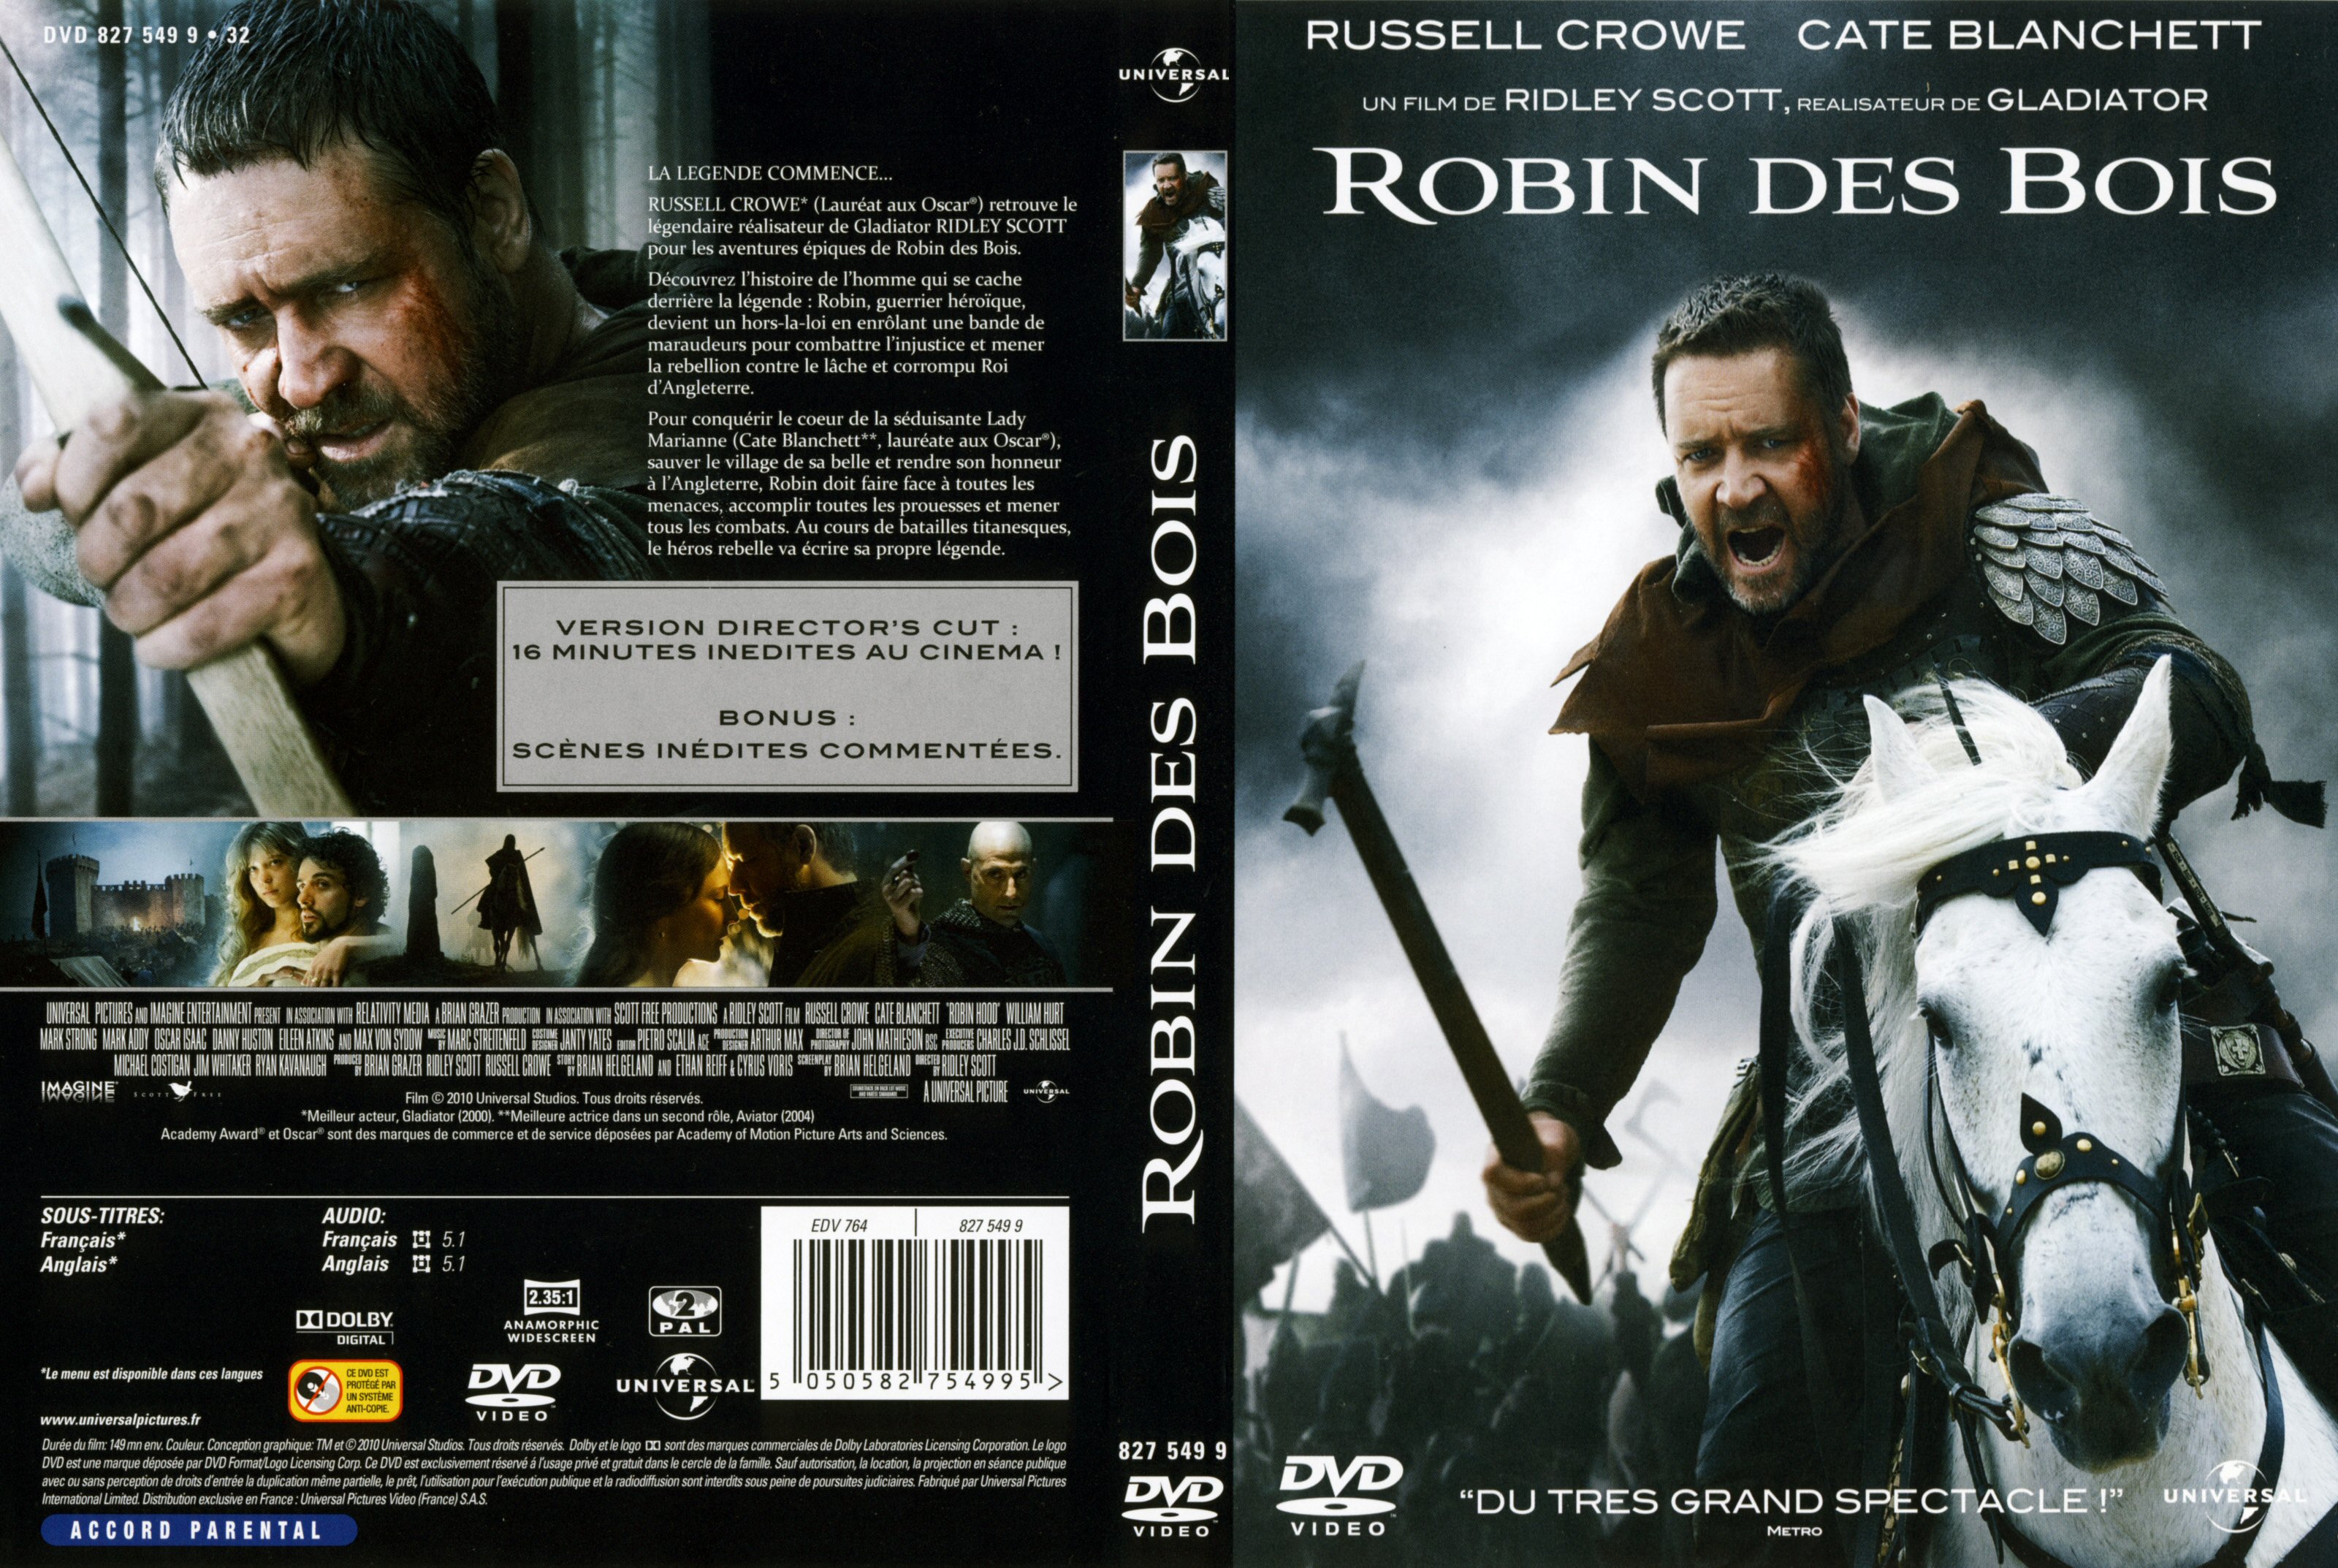 Jaquette DVD Robin des bois (2010)